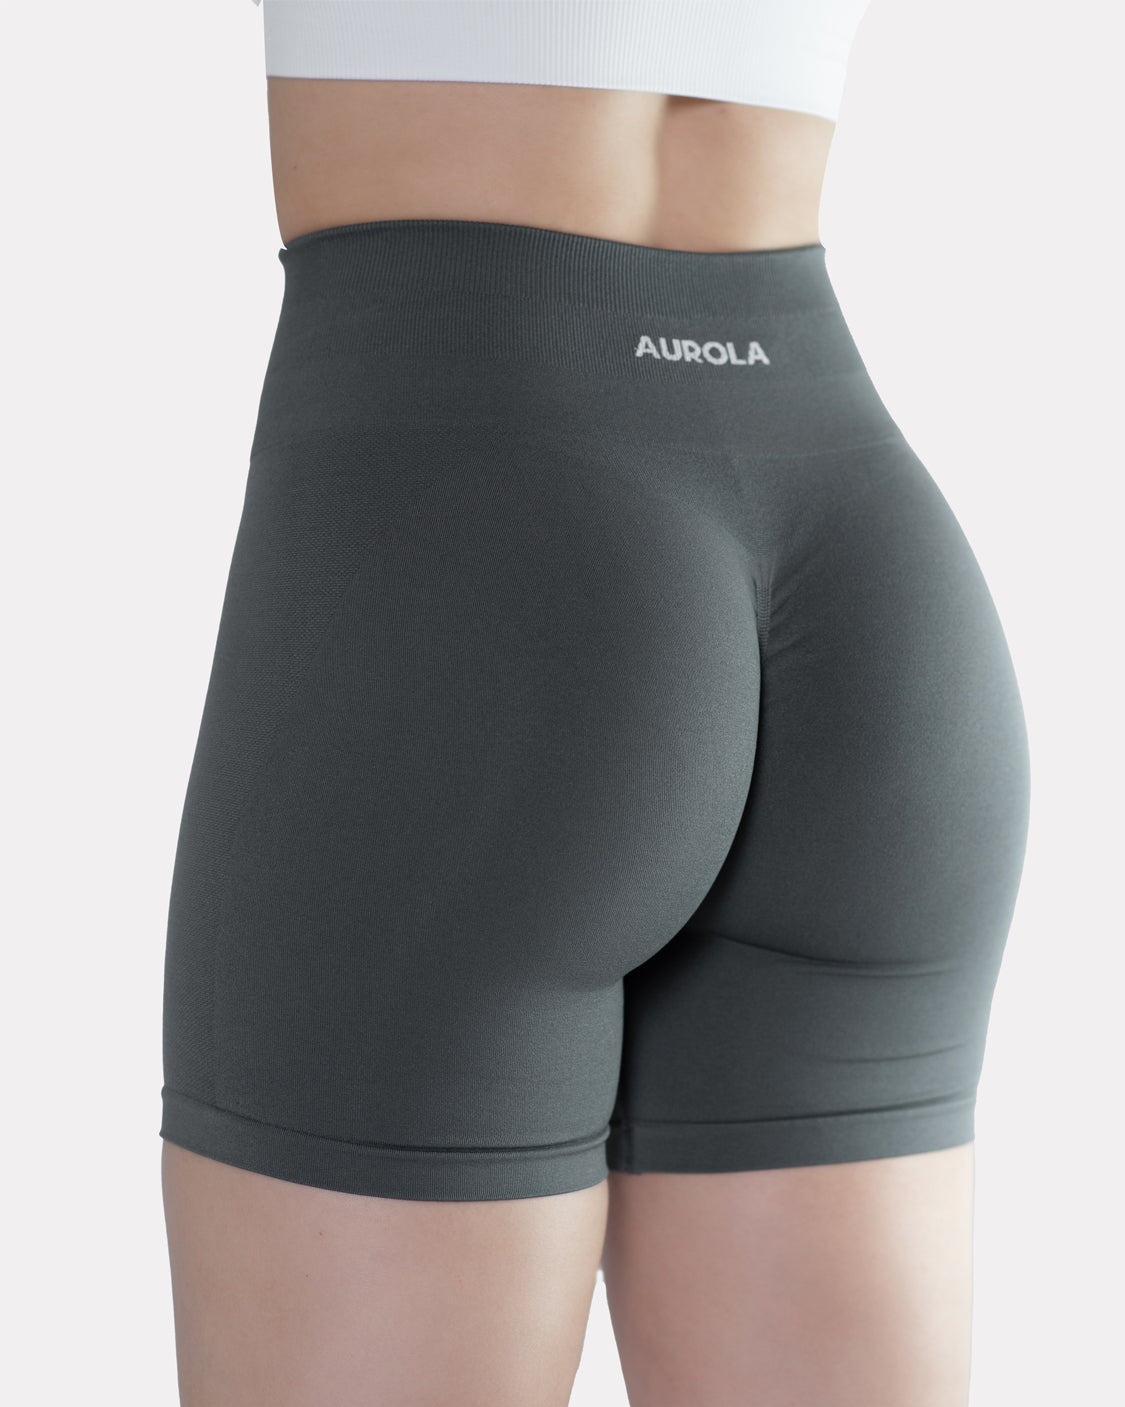 AUROLA Intensify V2.0 3.6 Shorts - Diamond Gusset